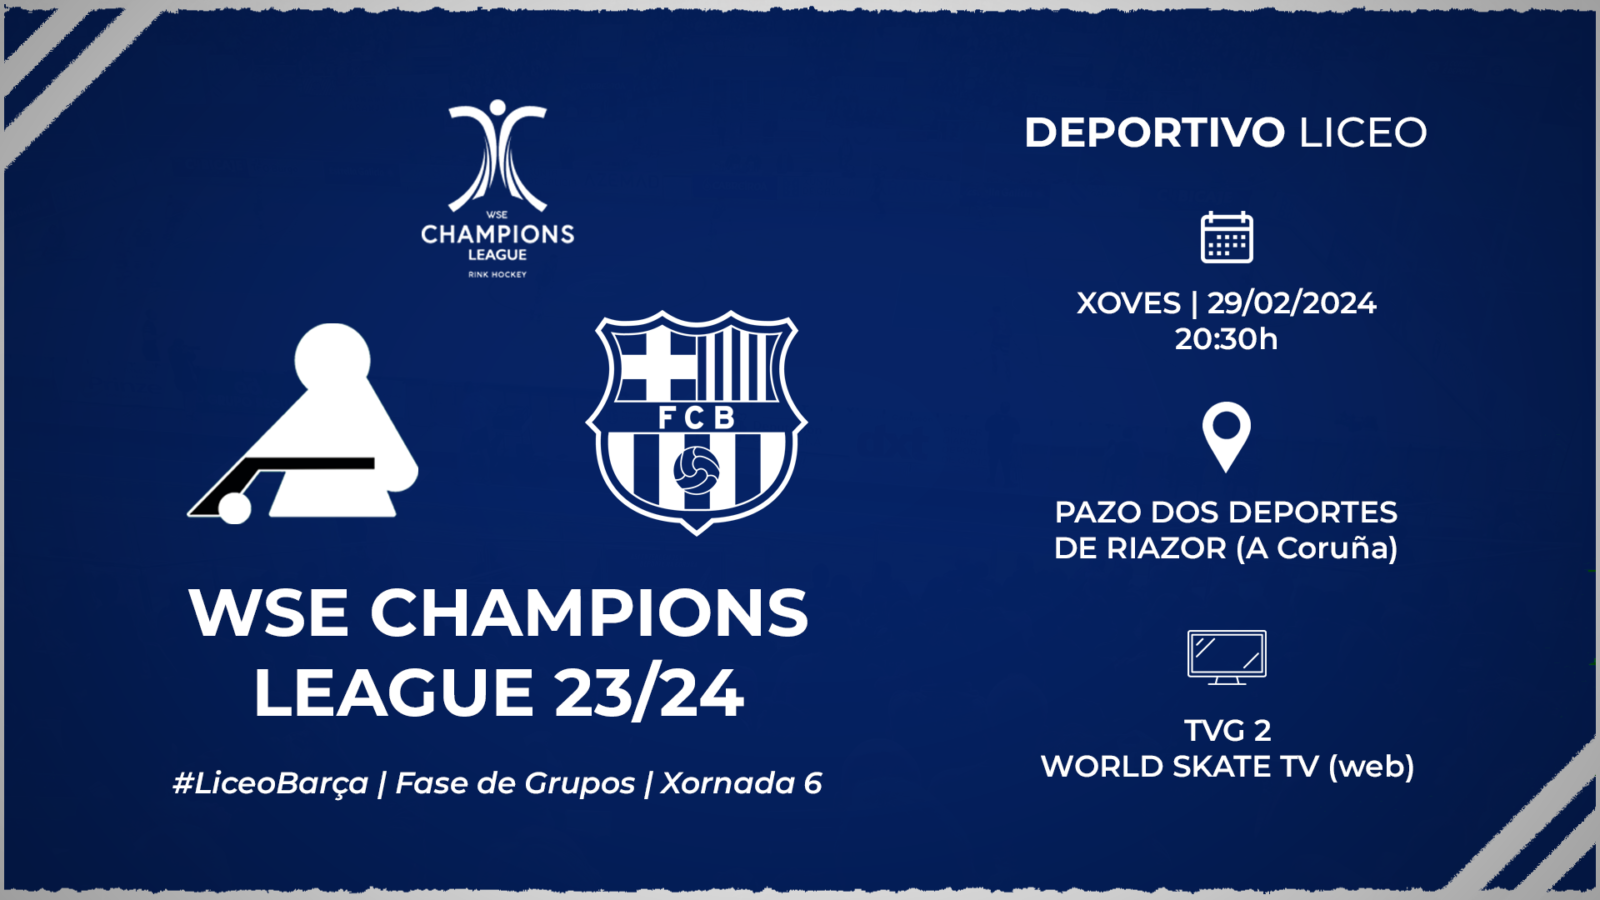 #LiceoBarça | ENTRADAS para a xornada 6 da WSE Champions League 23/24